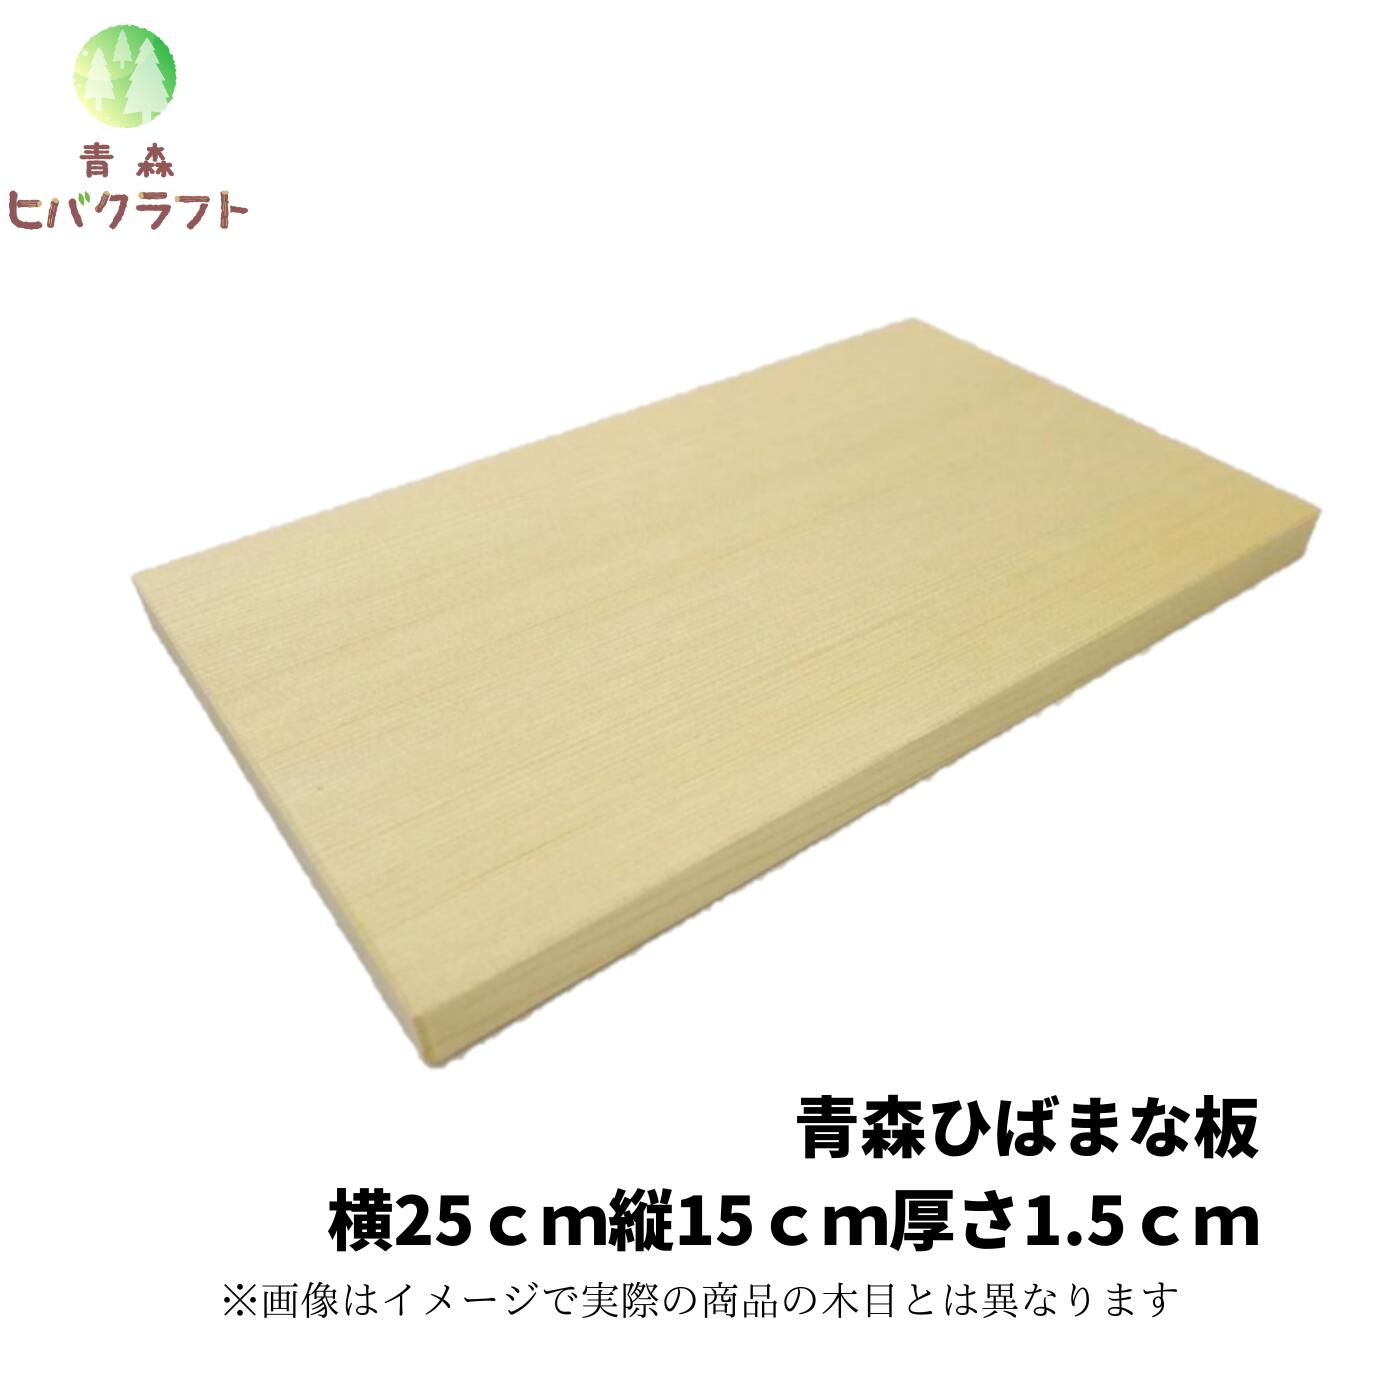 【楽天市場】青森 ひば 薄型 まな板 23cm×15cm厚さ1.0cm ヒバ 木製 